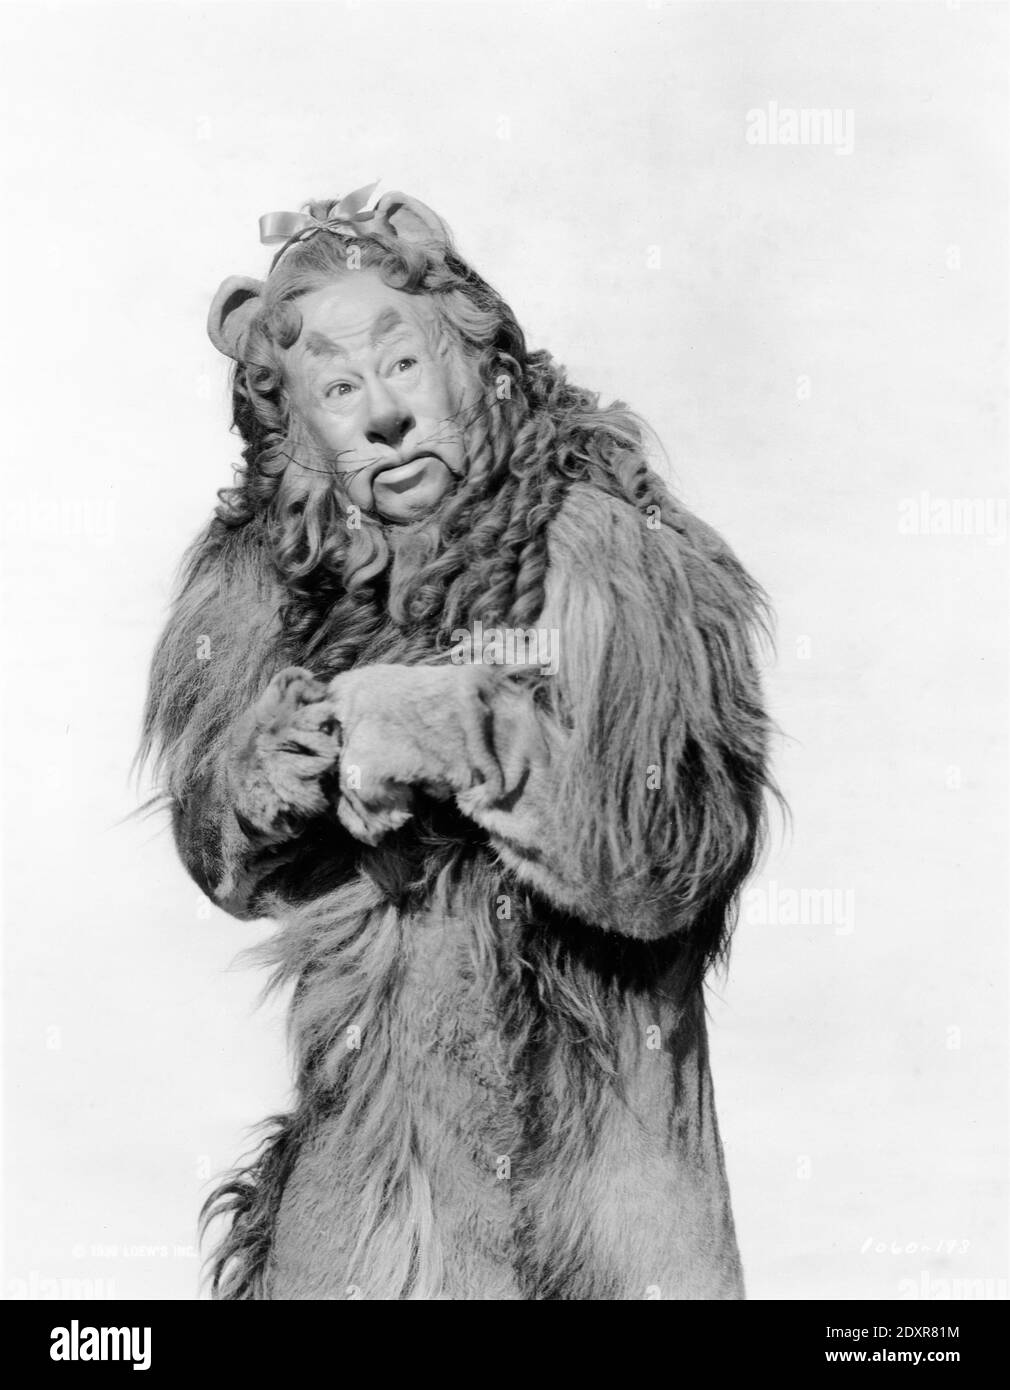 BERT LAHR Portrait comme le lion lâche dans LE MAGICIEN DE L'OZ 1939 réalisateur VICTOR FLEMING livre Frank L. Baum costumes Gilbert Adrian Metro Goldwyn Mayer Banque D'Images